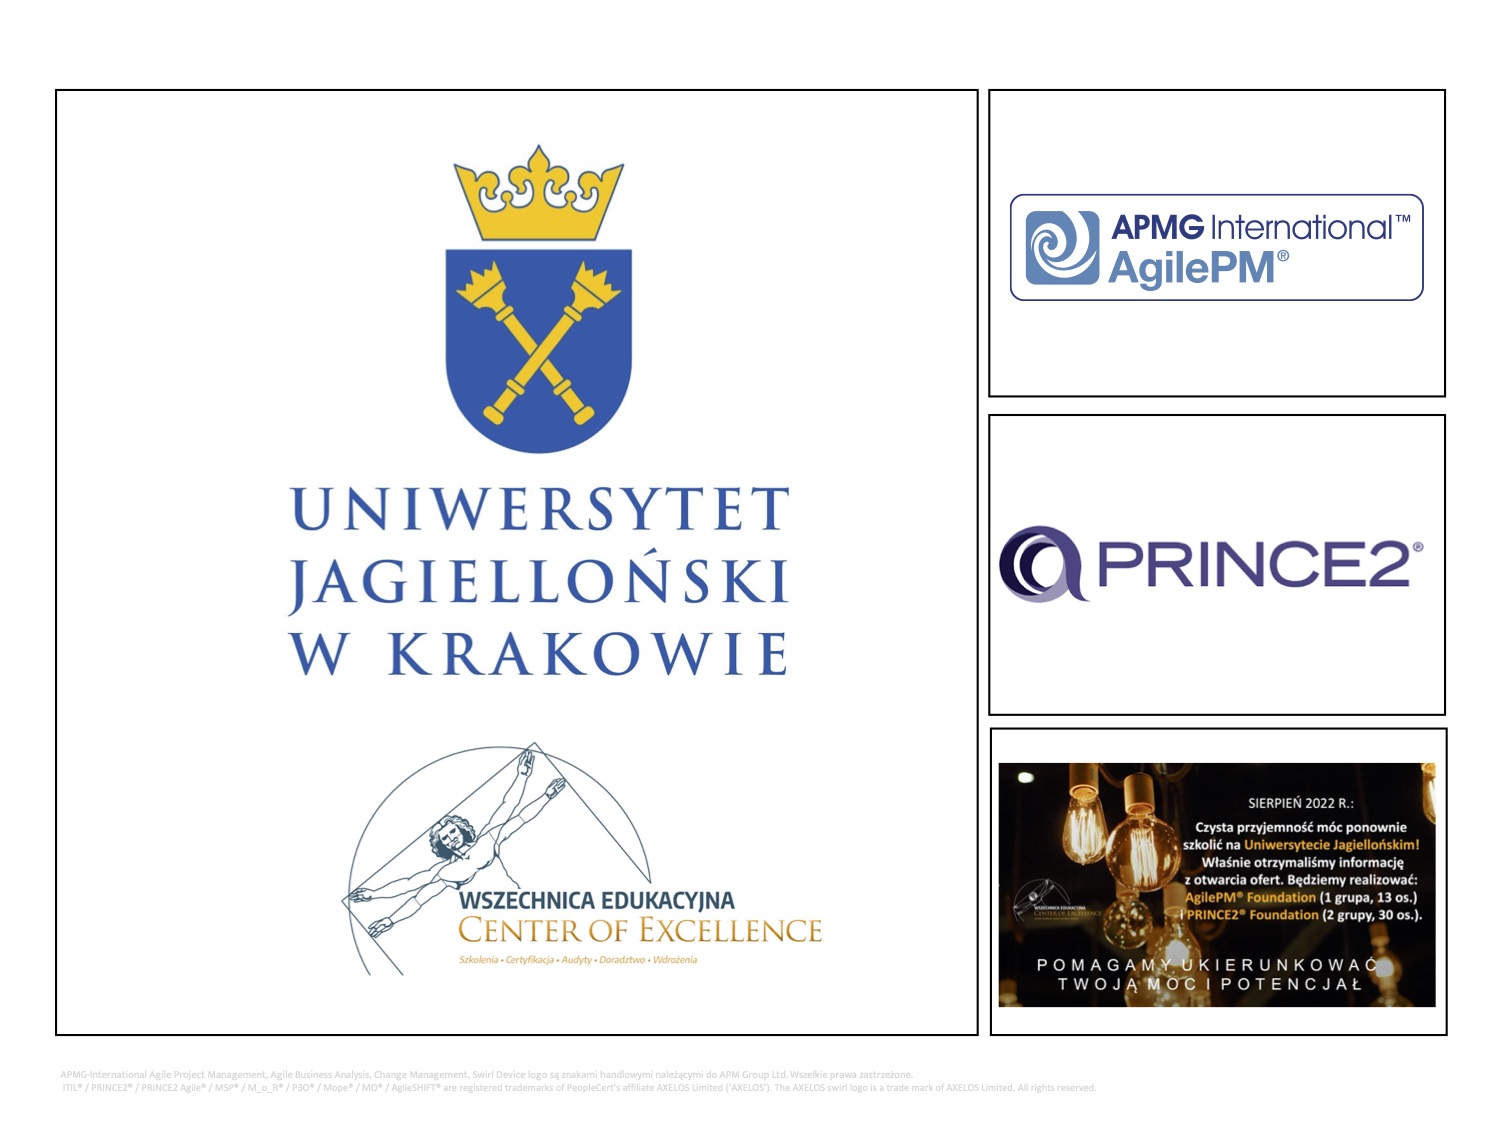 Uniwersytet Jagielloński - AgilePM - PRINCE2- Wszechnnica Edukacyjna.jpg